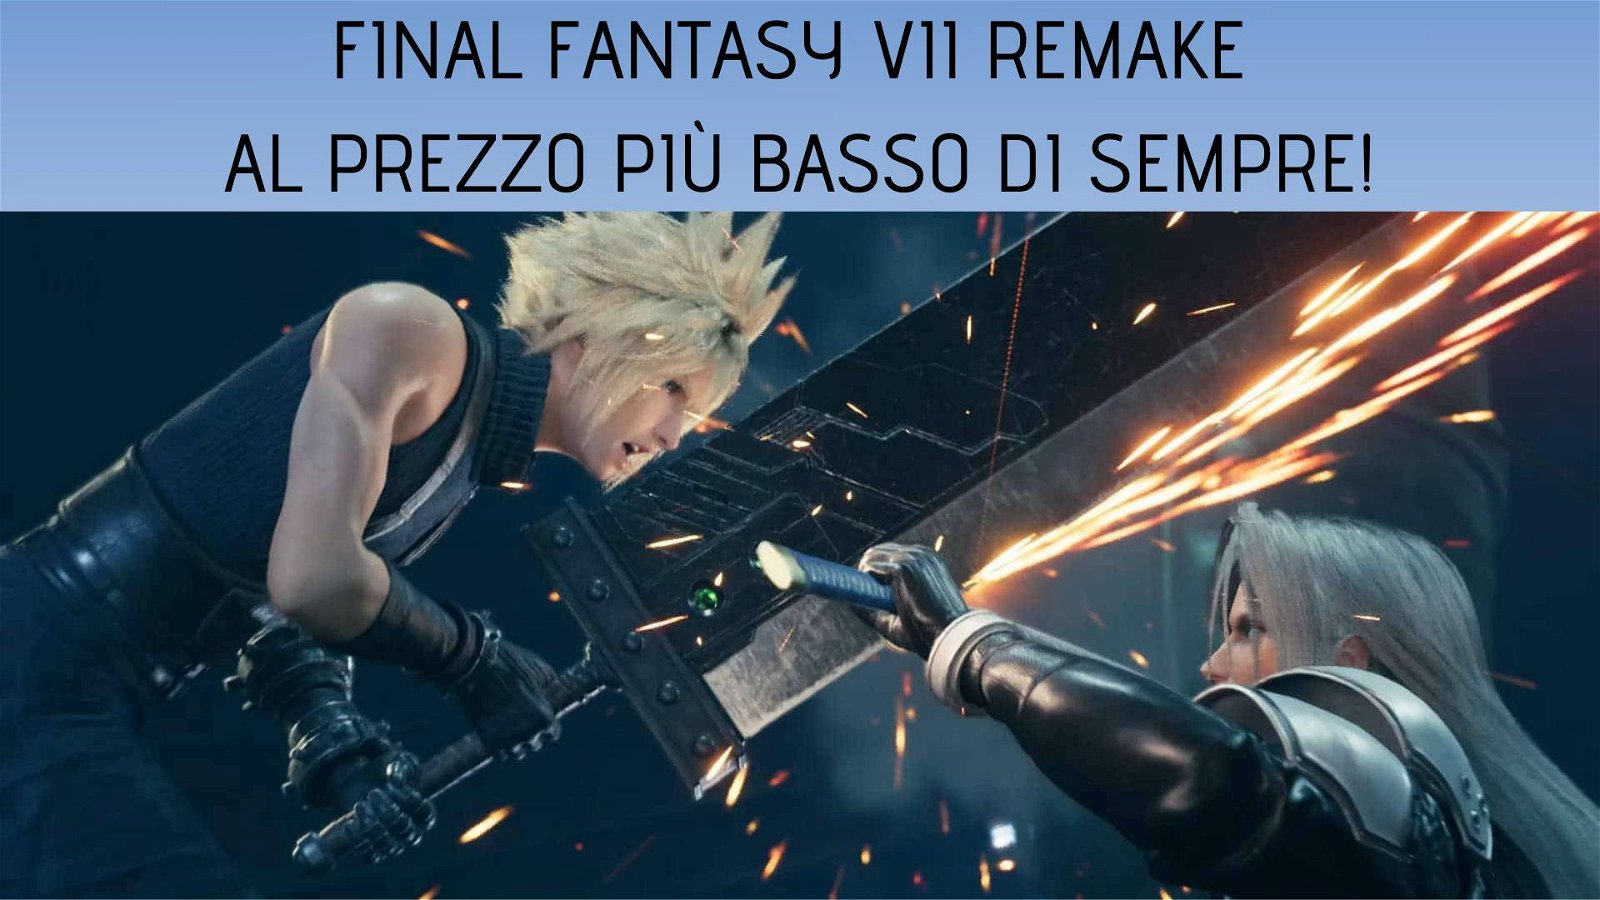 Immagine di Final Fantasy VII Remake al prezzo più basso di sempre su Amazon!